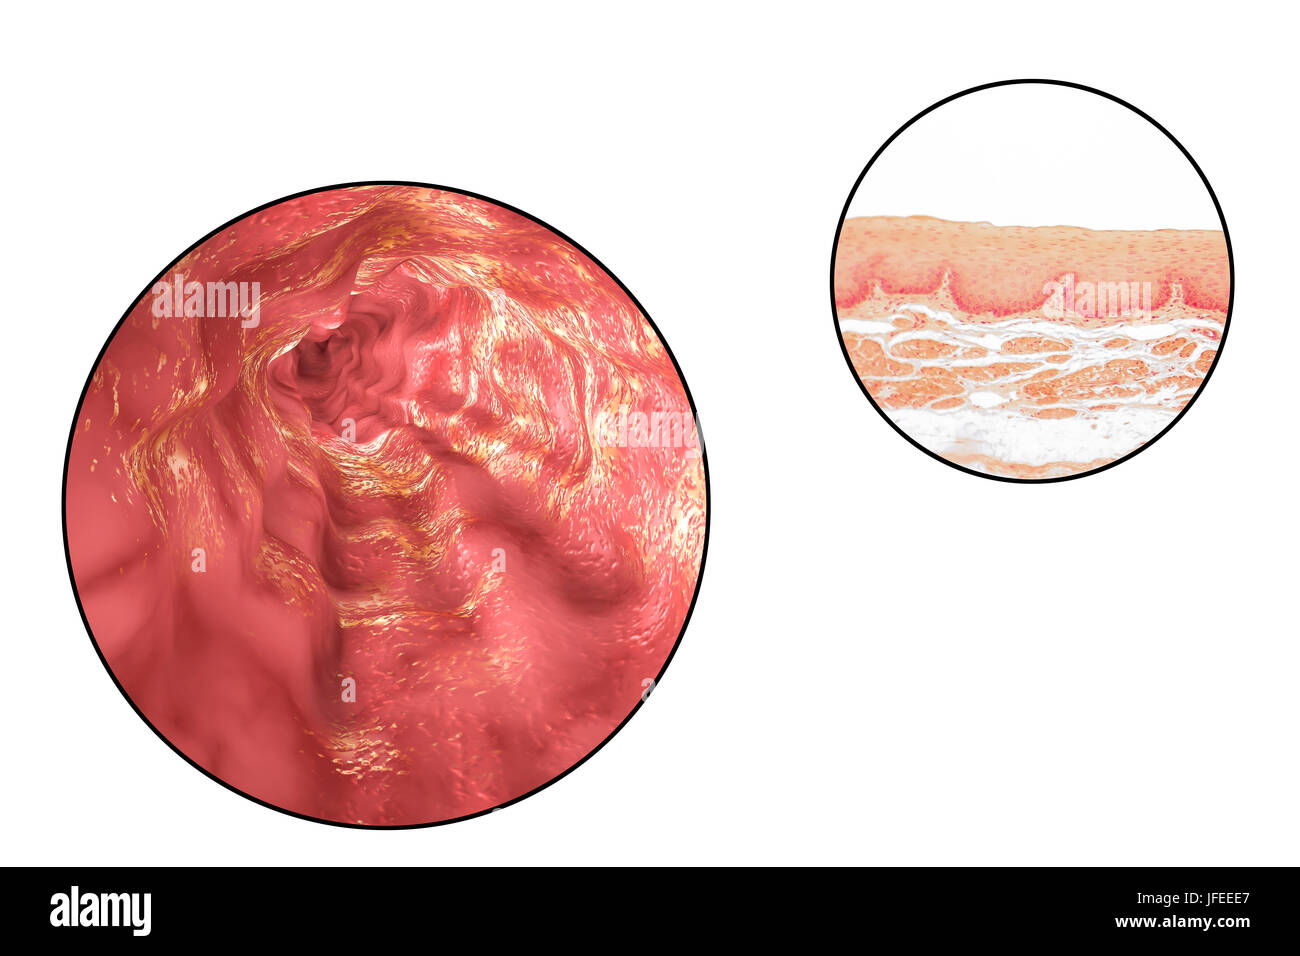 La paroi de l'œsophage. Microphotographie lumière d'une section à travers l'œsophage humain, qui passe les aliments de la bouche à l'estomac. L'oesophage lumen (blanc, haut) est bordée par une couche épaisse d'épithélium pavimenteux stratifié (rouge) qui protège les tissus sous-jacents. En dessous c'est une couche de support de tissu conjonctif, la lamina propria, qui contient des vaisseaux sanguins et est riche en fibres d'élastine. Banque D'Images